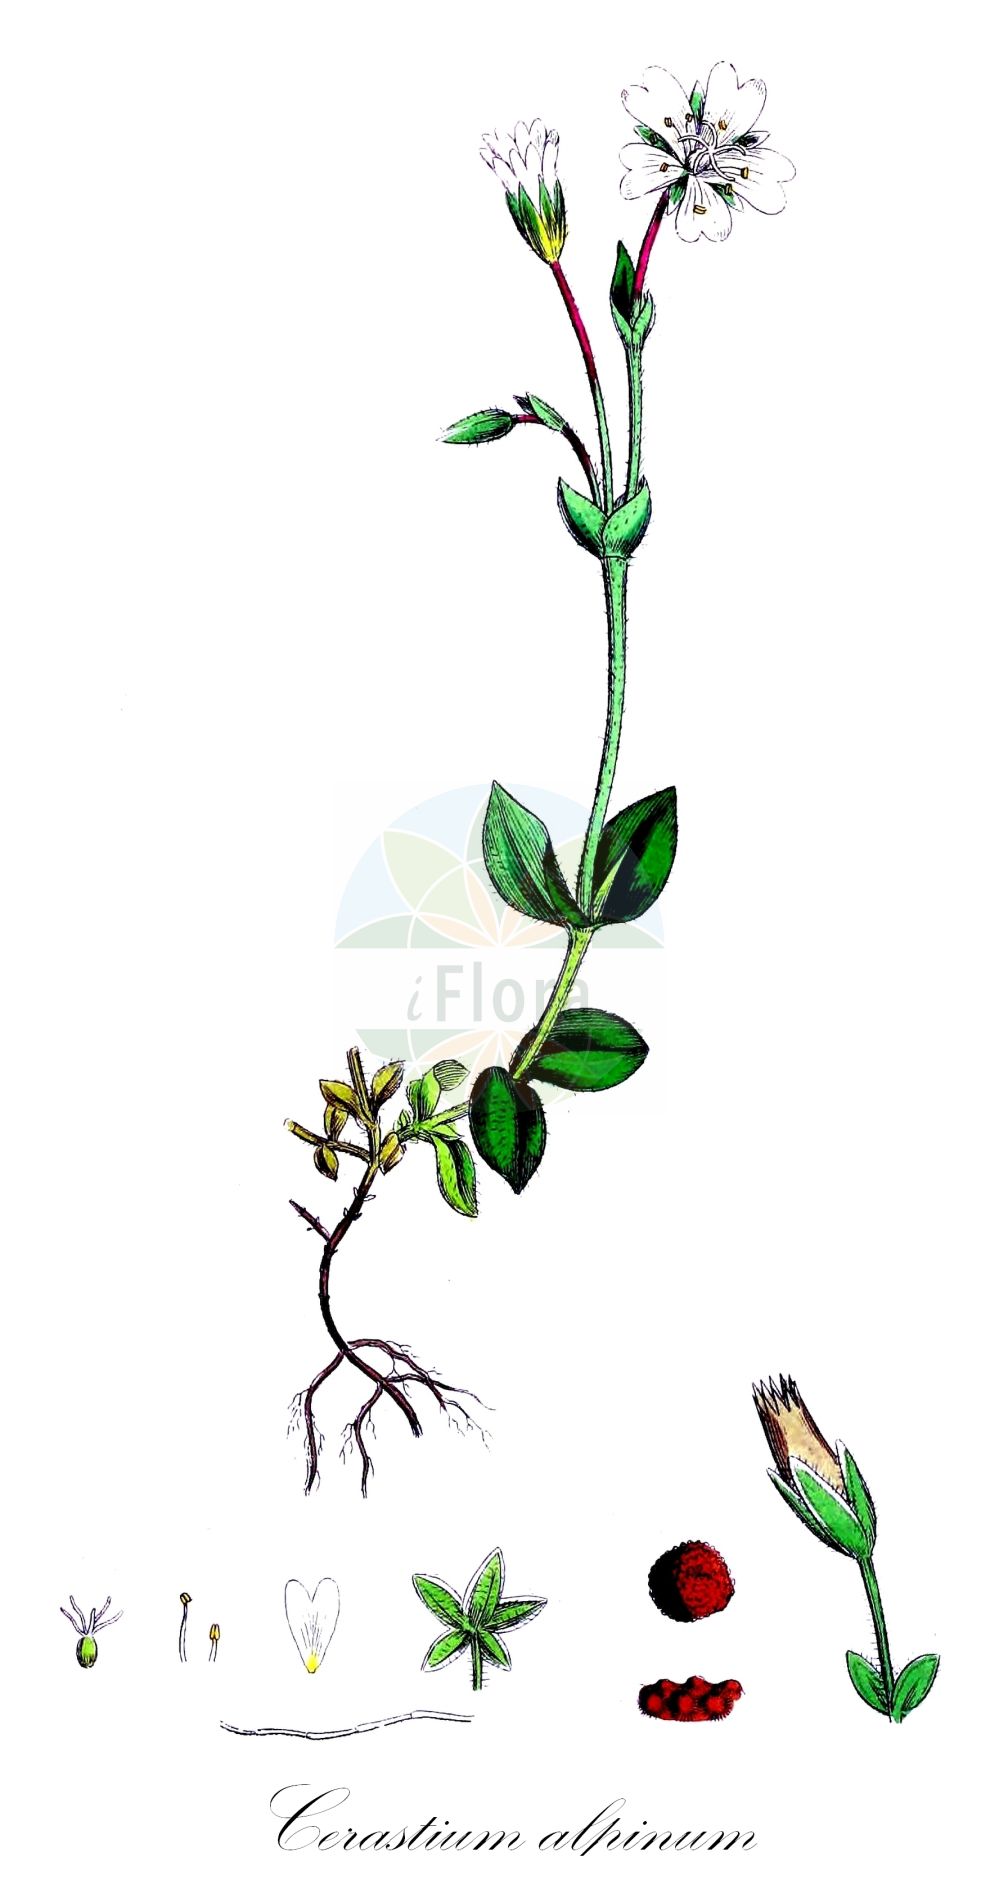 Historische Abbildung von Cerastium alpinum (Alpen-Hornkraut - Alpine Mouse-ear). Das Bild zeigt Blatt, Bluete, Frucht und Same. ---- Historical Drawing of Cerastium alpinum (Alpen-Hornkraut - Alpine Mouse-ear). The image is showing leaf, flower, fruit and seed.(Cerastium alpinum,Alpen-Hornkraut,Alpine Mouse-ear,Cerastium alpinum,Cerastium alpinum L. subsp.,Cerastium atratum,Cerastium glaberrimum,Cerastium glabratum,Cerastium hekuravense,Cerastium lanatum,Cerastium squalidum,Alpen-Hornkraut,Wolliges Alpen-Hornkraut,Alpine Mouse-ear,Shetland Mouse-ear,Arctic Mouse-ear,Alpine Chickweed,Alpine Mouse-ear Chickweed,Cerastium,Hornkraut,Chickweed,Caryophyllaceae,Nelkengewächse,Pink family,Blatt,Bluete,Frucht,Same,leaf,flower,fruit,seed,Sowerby (1790-1813))